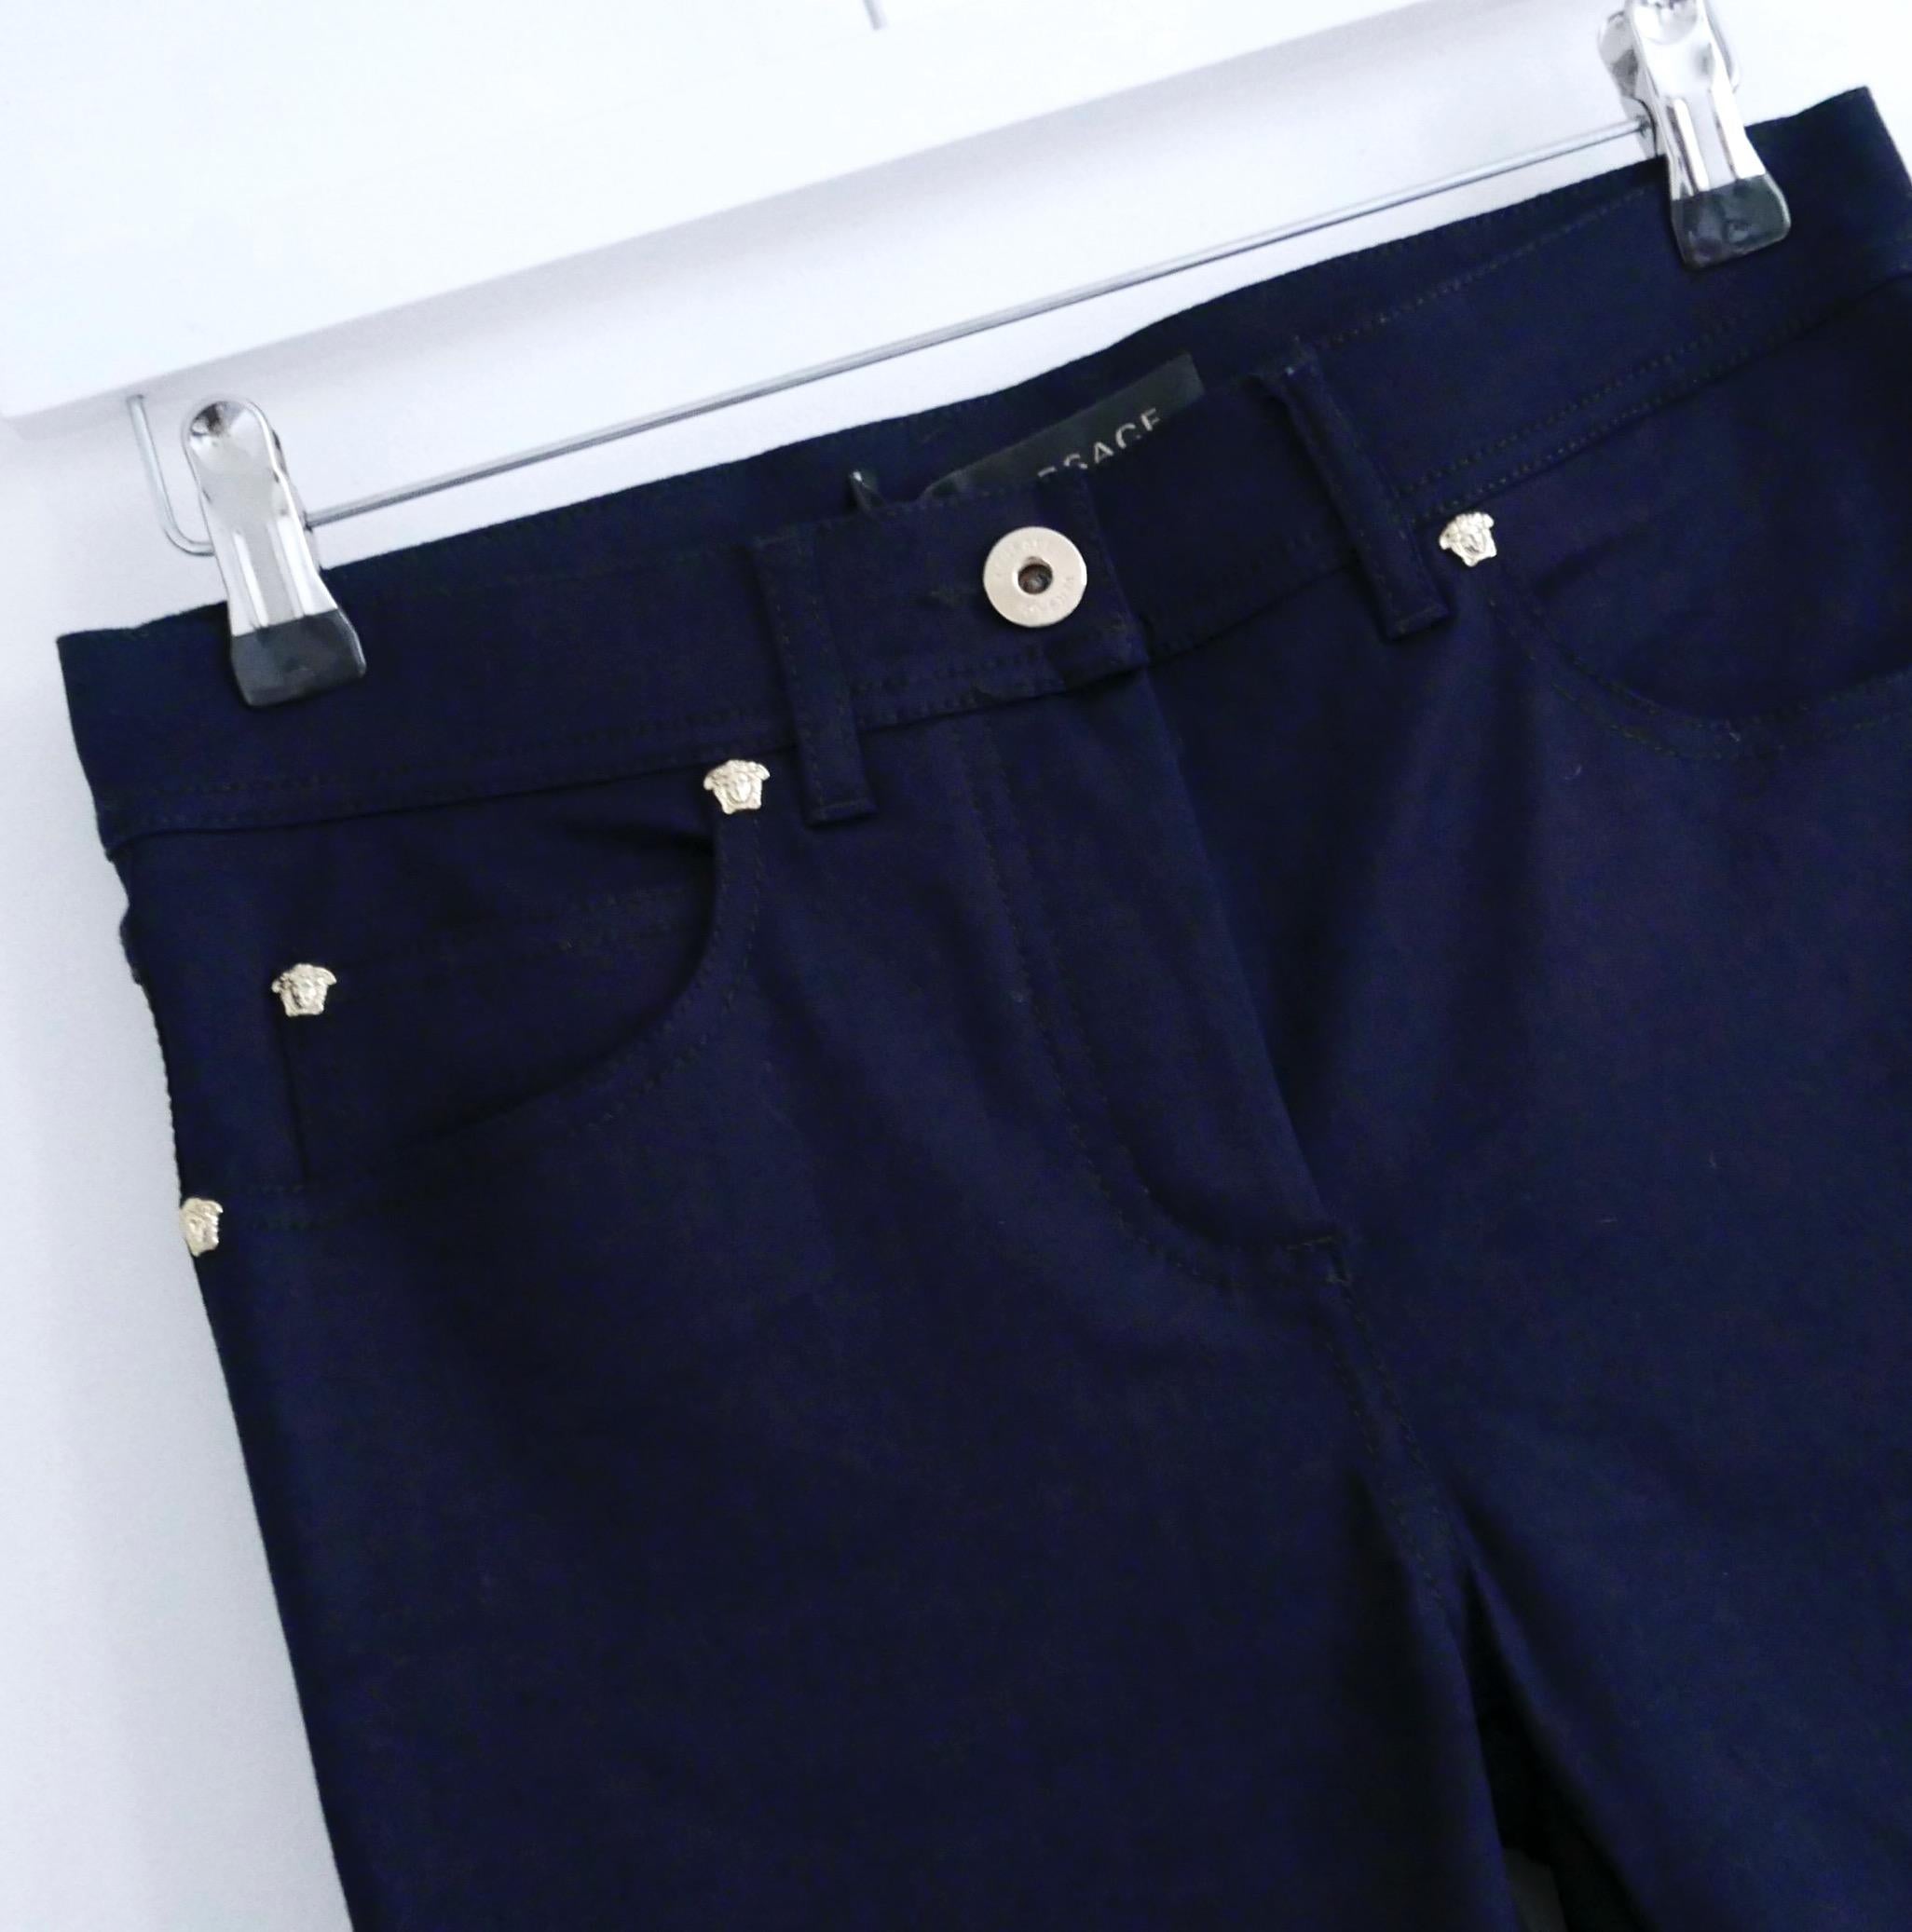 Super luxe Versace Jeans - gekauft für £475 und neu mit Etikett. Sie haben eine Vorderseite aus marineblauem Baumwollmix-Denim und eine dehnbare, leicht glänzende, dicke Rückseite aus schwarzem Jersey mit kontrastierenden Taschen in Marineblau. Mit